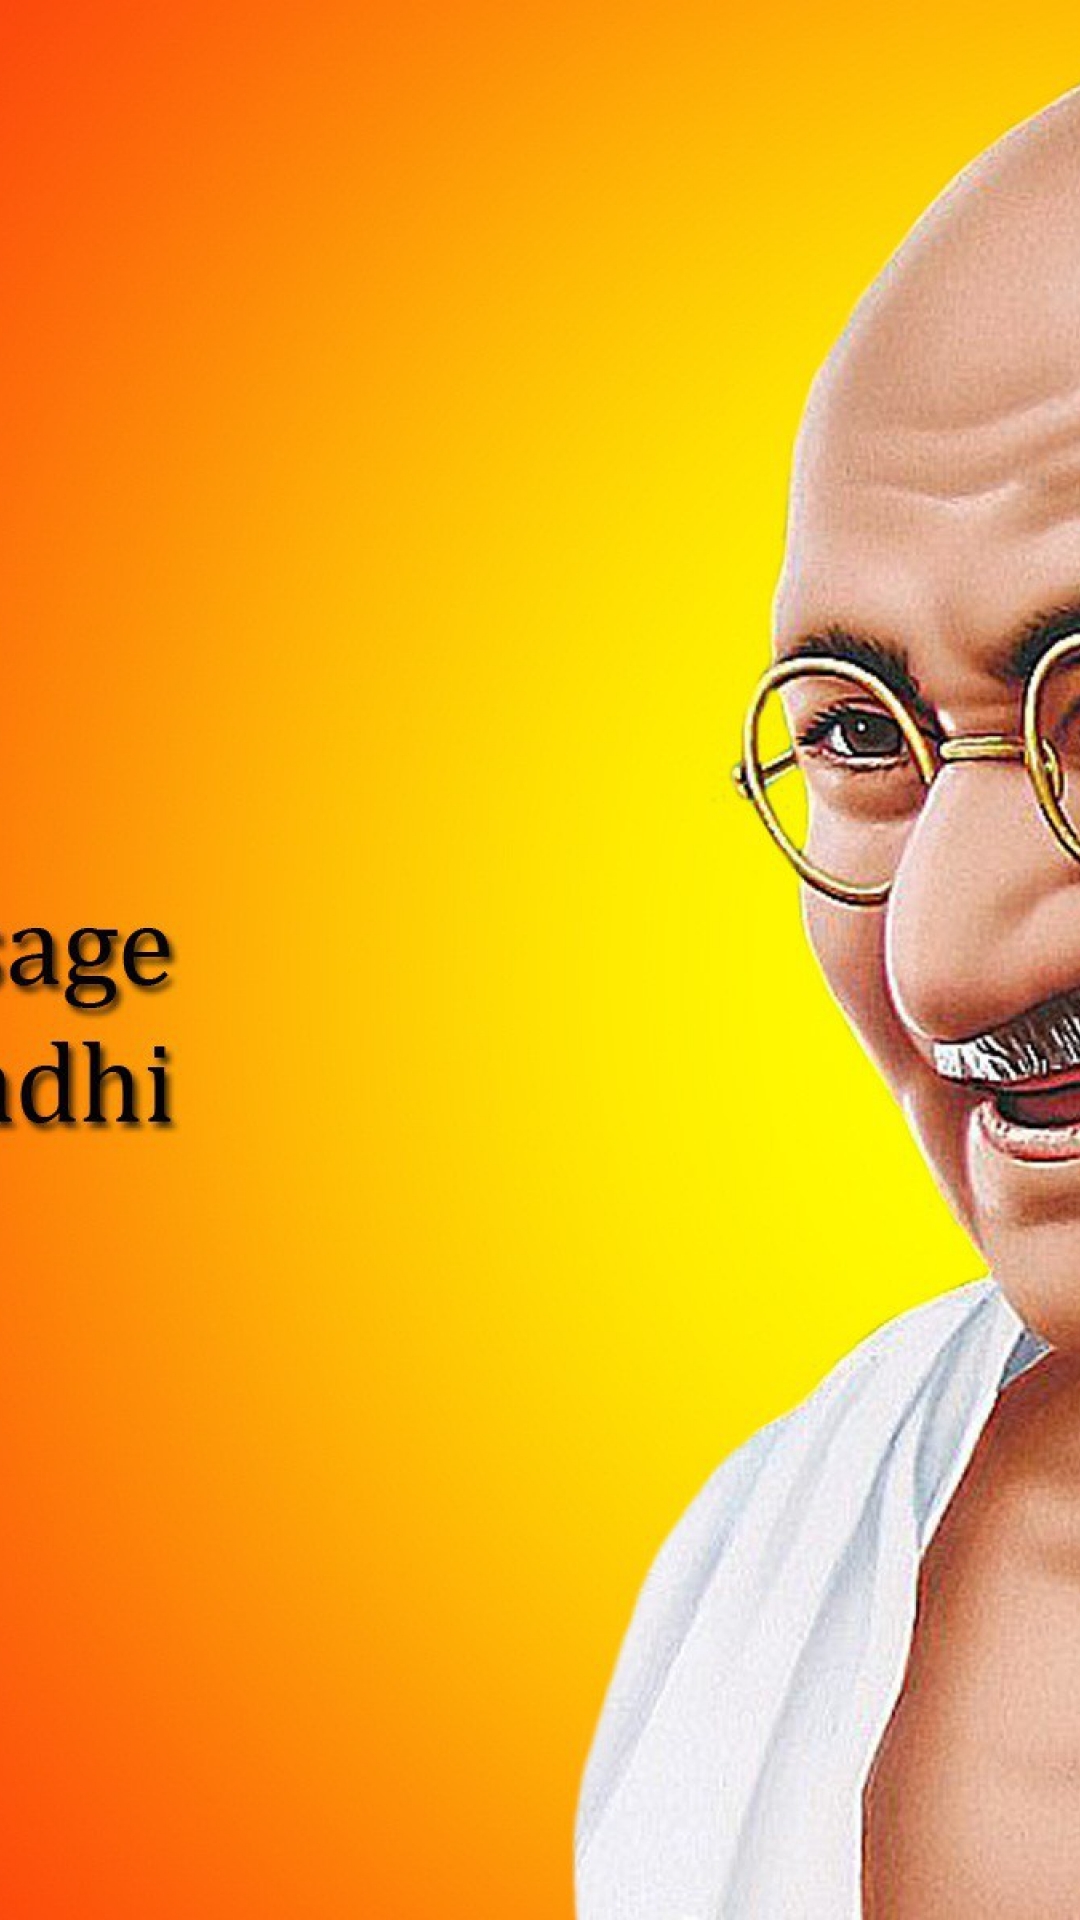 Mahatma Gandhi Wallpaper - Mahatma Gandhi Death Anniversary 2019 , HD Wallpaper & Backgrounds